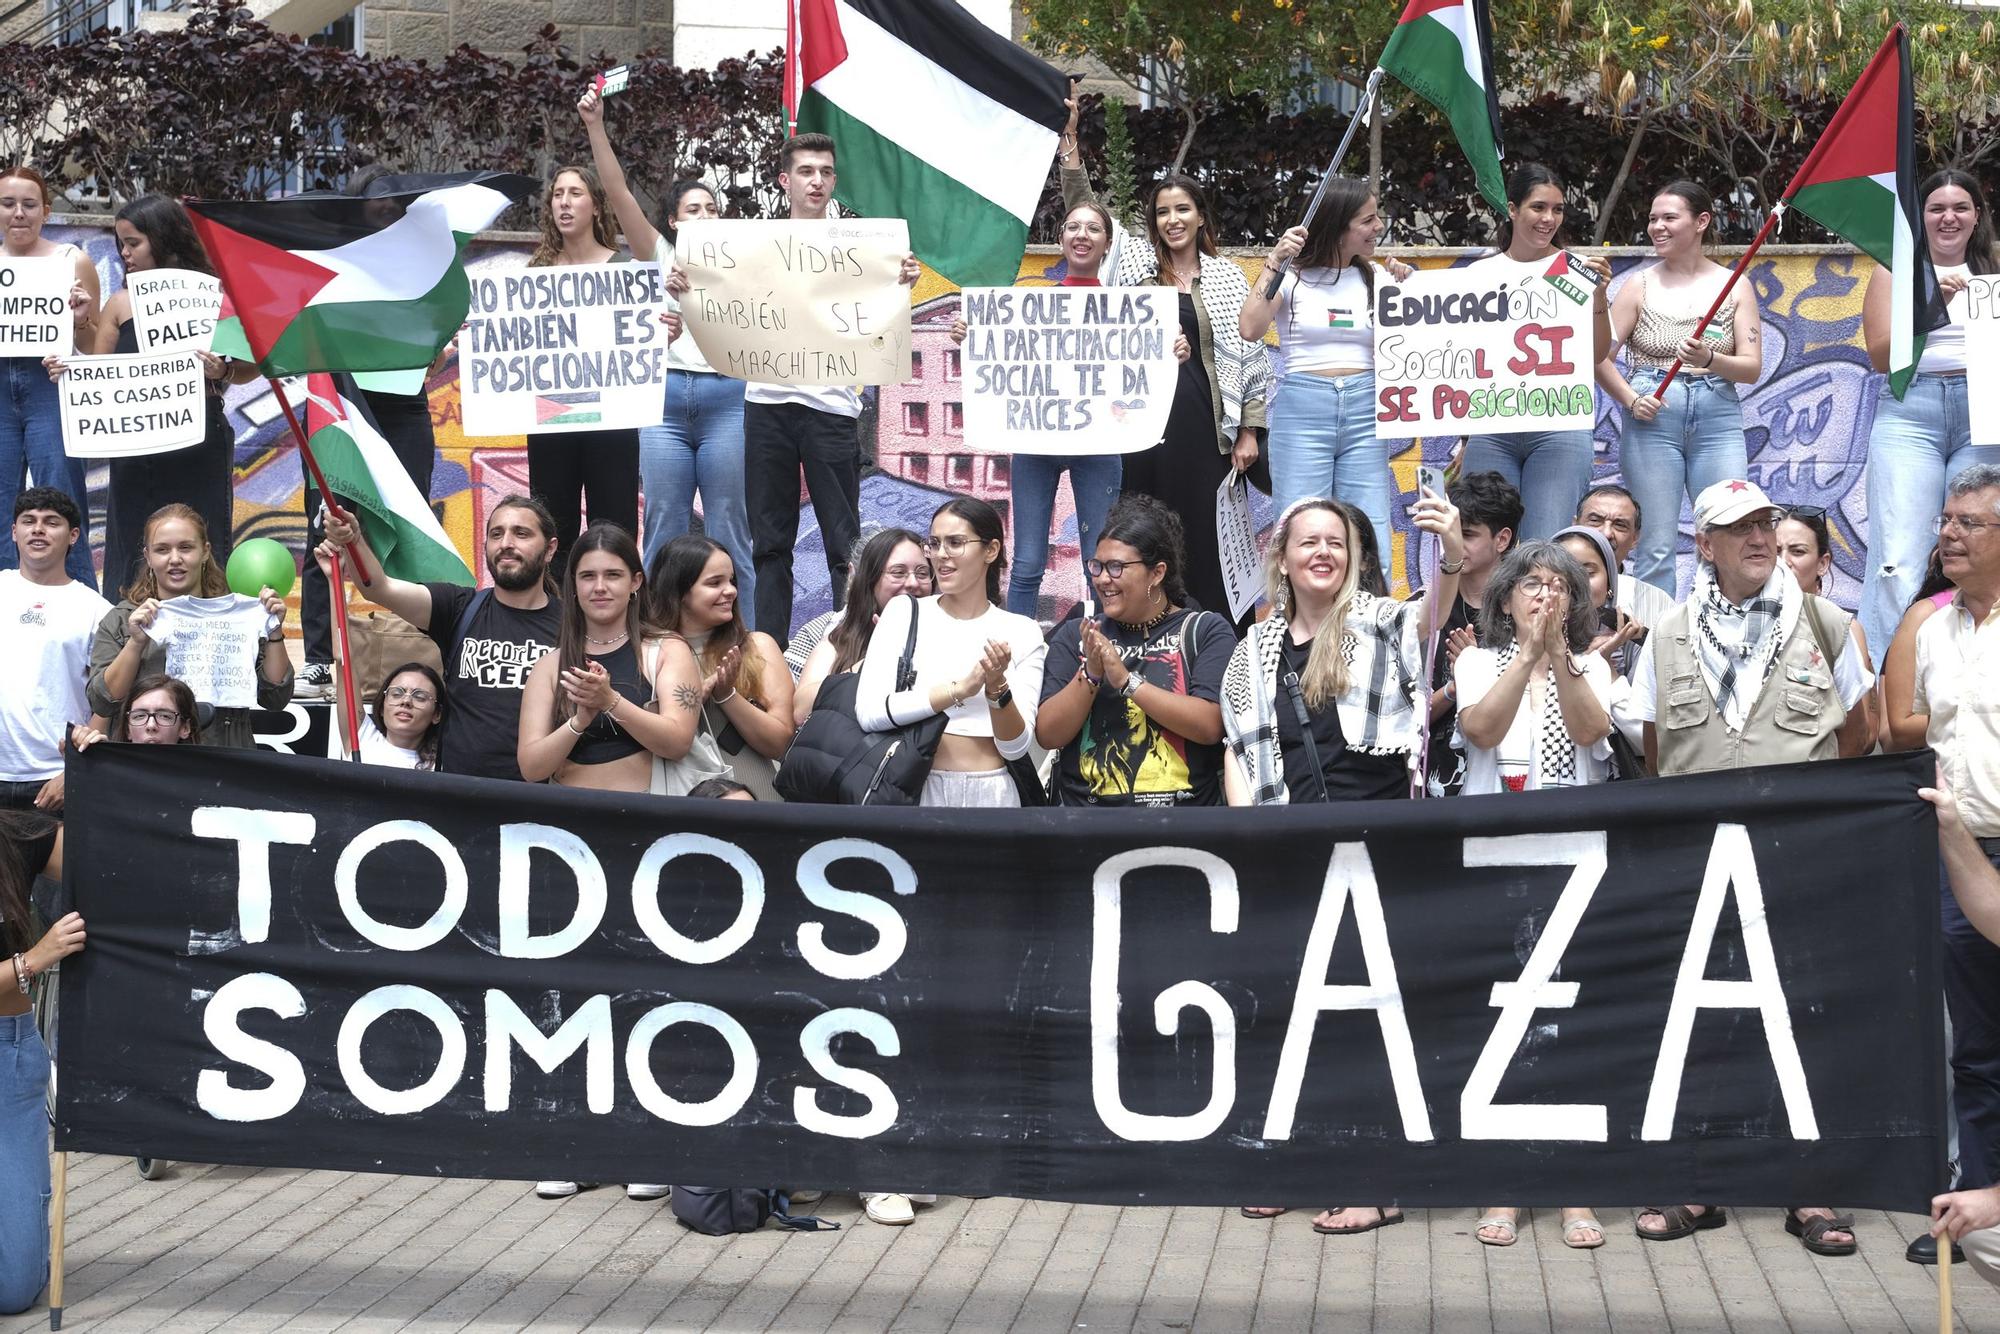 Protesta a favor de Palestina en la Facultad de Humanidades de la ULPGC